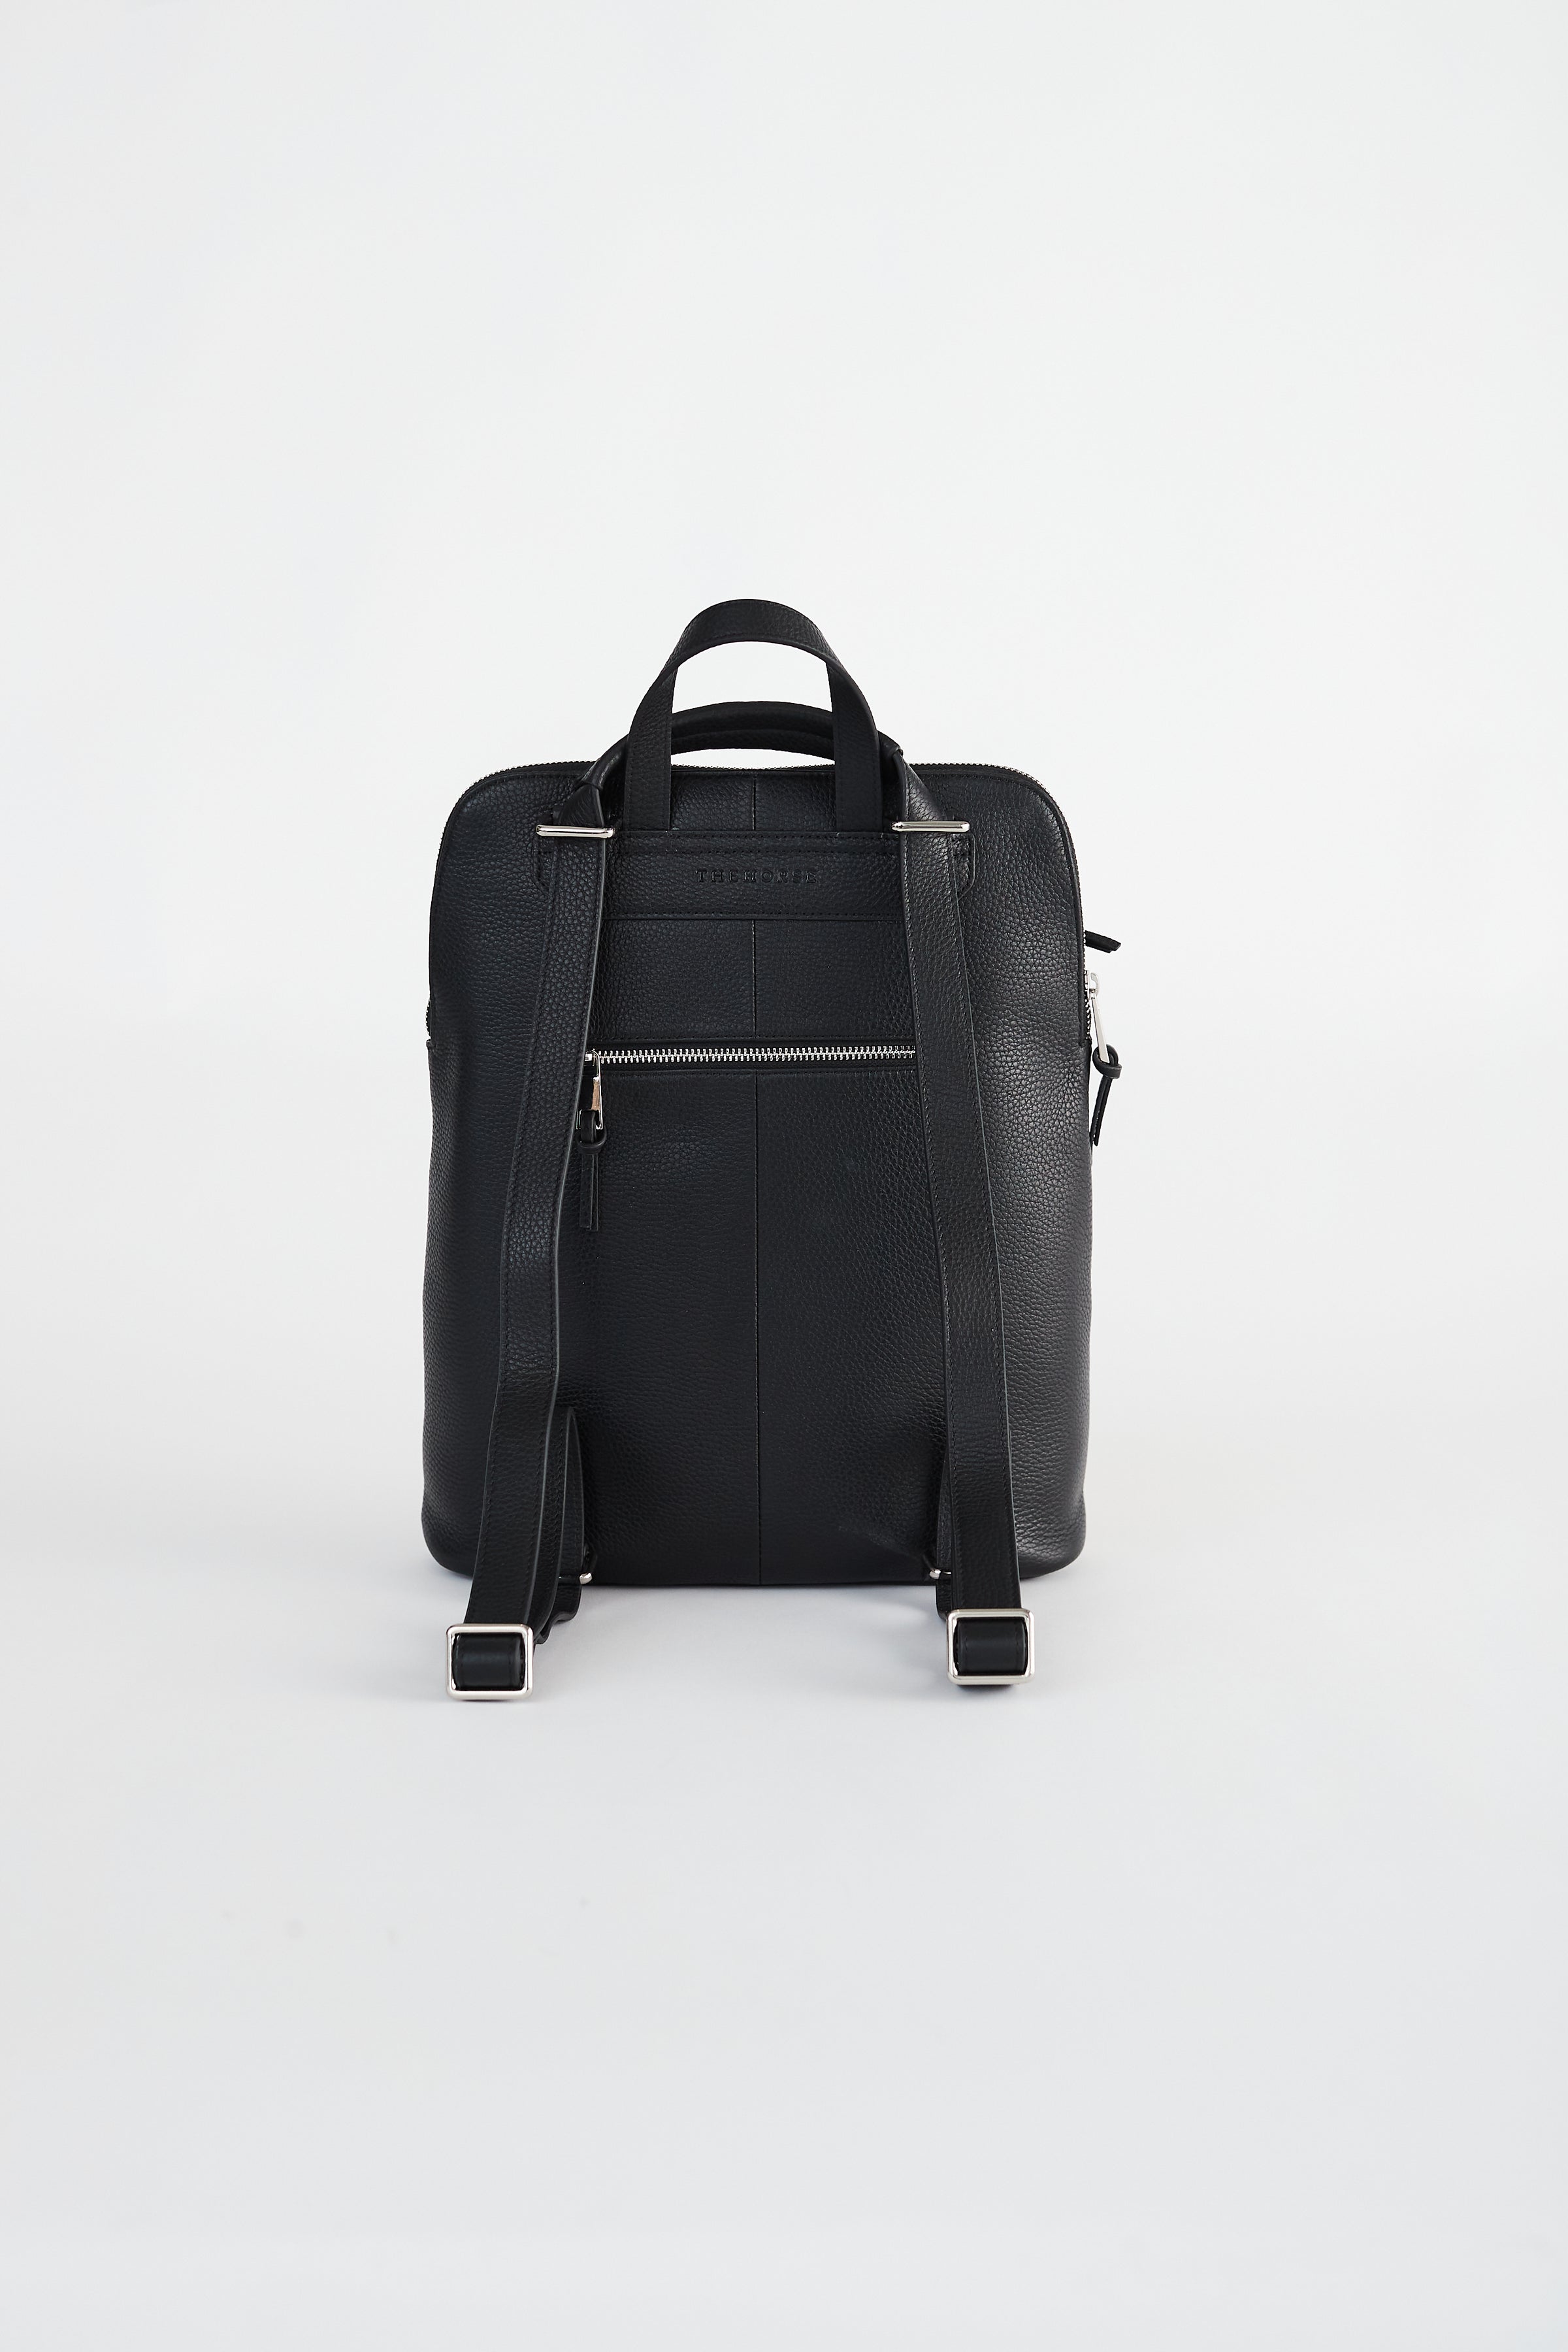 Backpack: Black